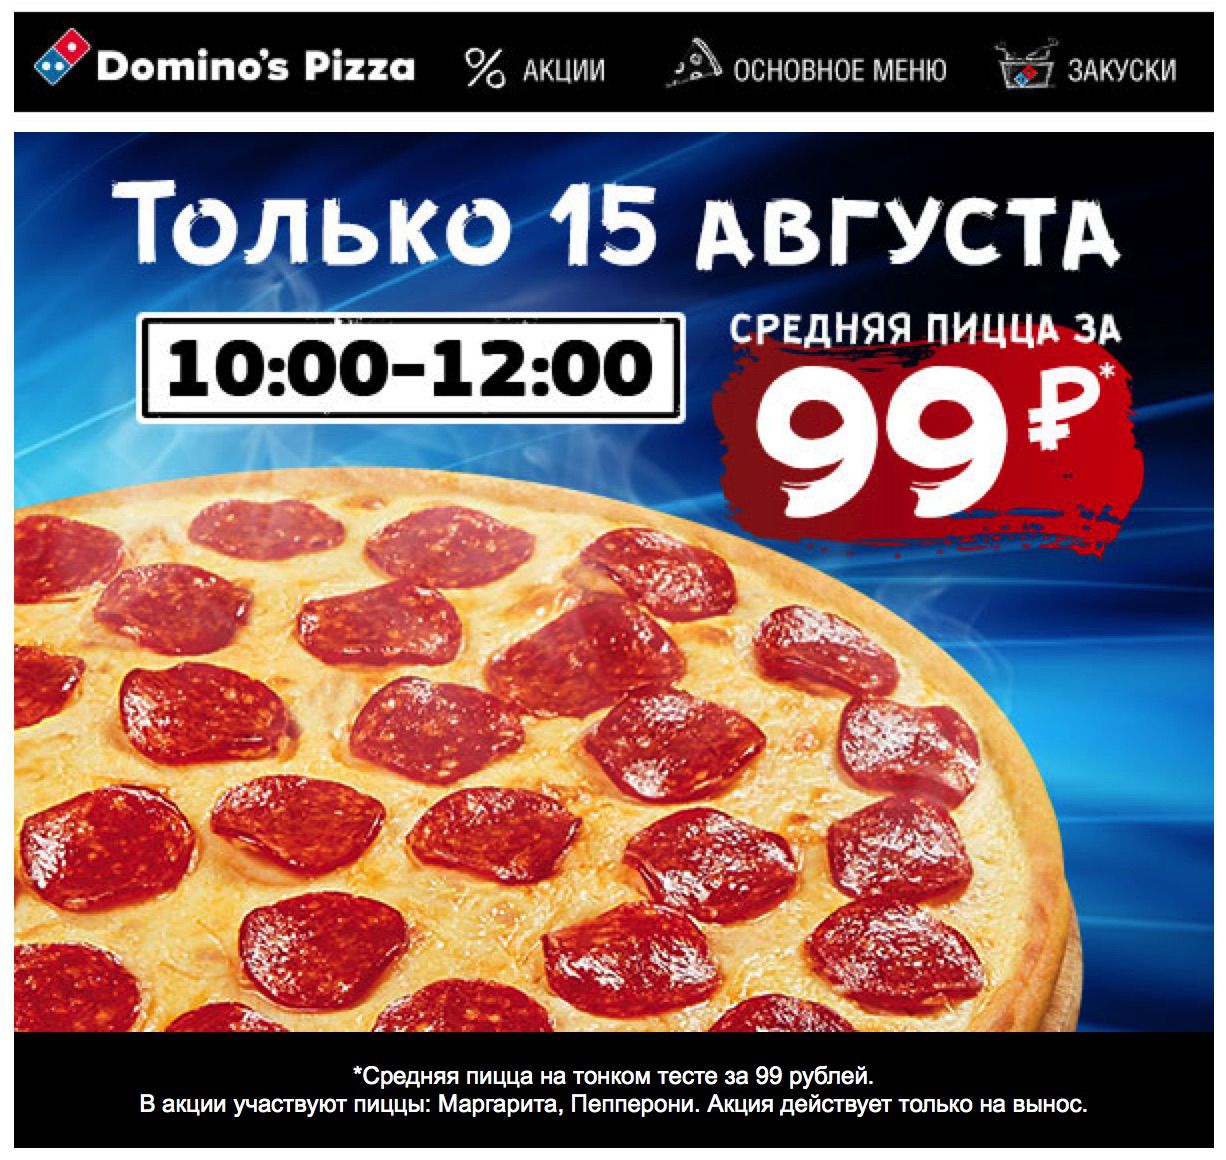 сколько стоит пицца пепперони в доминос фото 61